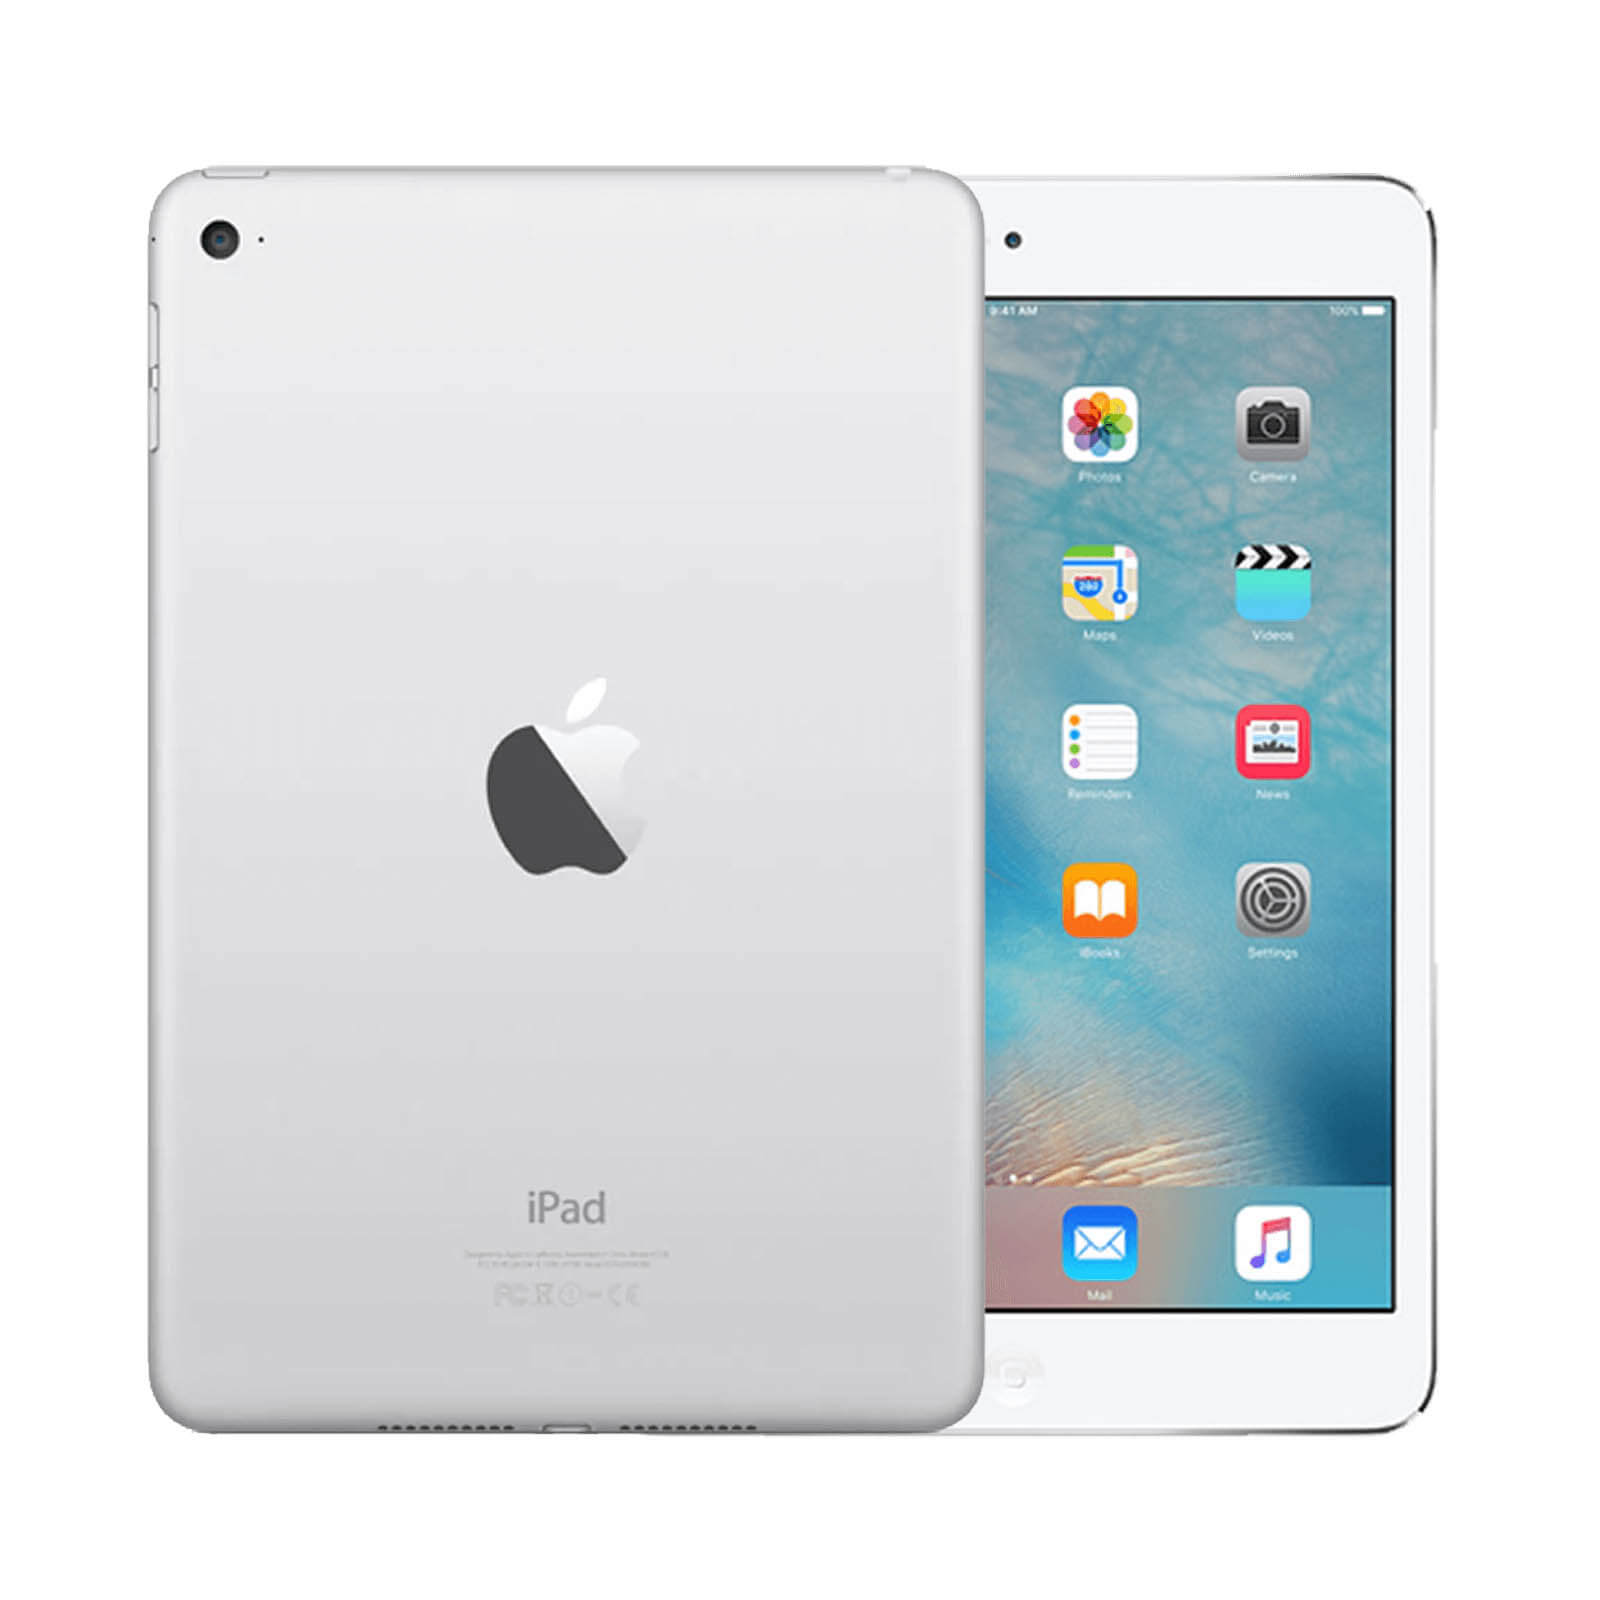 Apple iPad Mini 4 128GB Silver WiFi - Very Good 128GB Silver Very Good